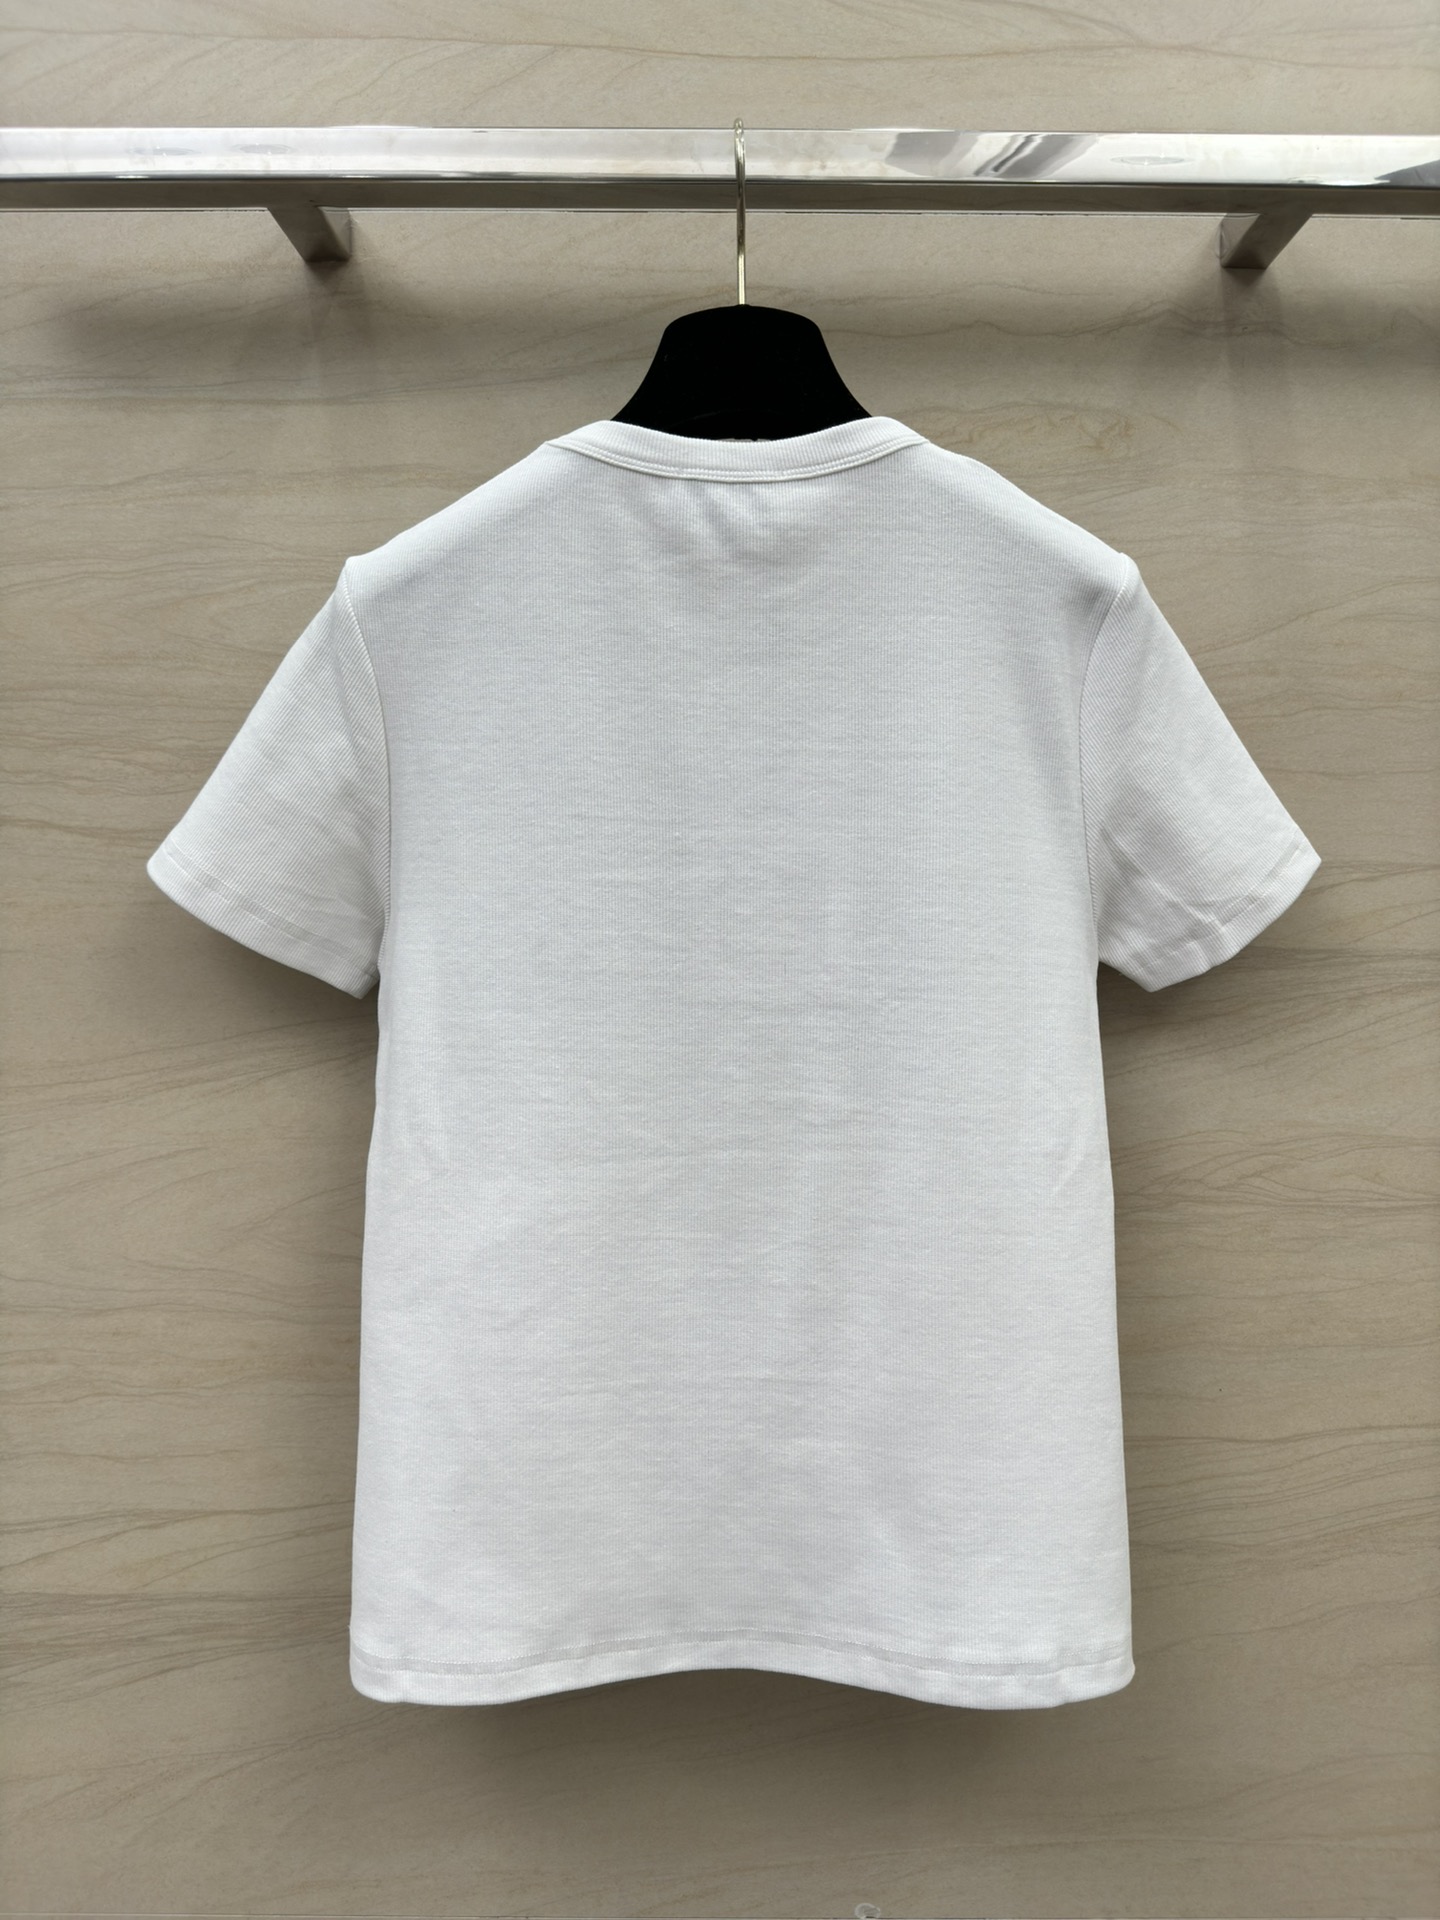 人気流行品 chanel t シャツ メンズコピー ロゴプリント 純綿 トップス 柔らかい 人間シャネル 刺繍 ホワイト_9